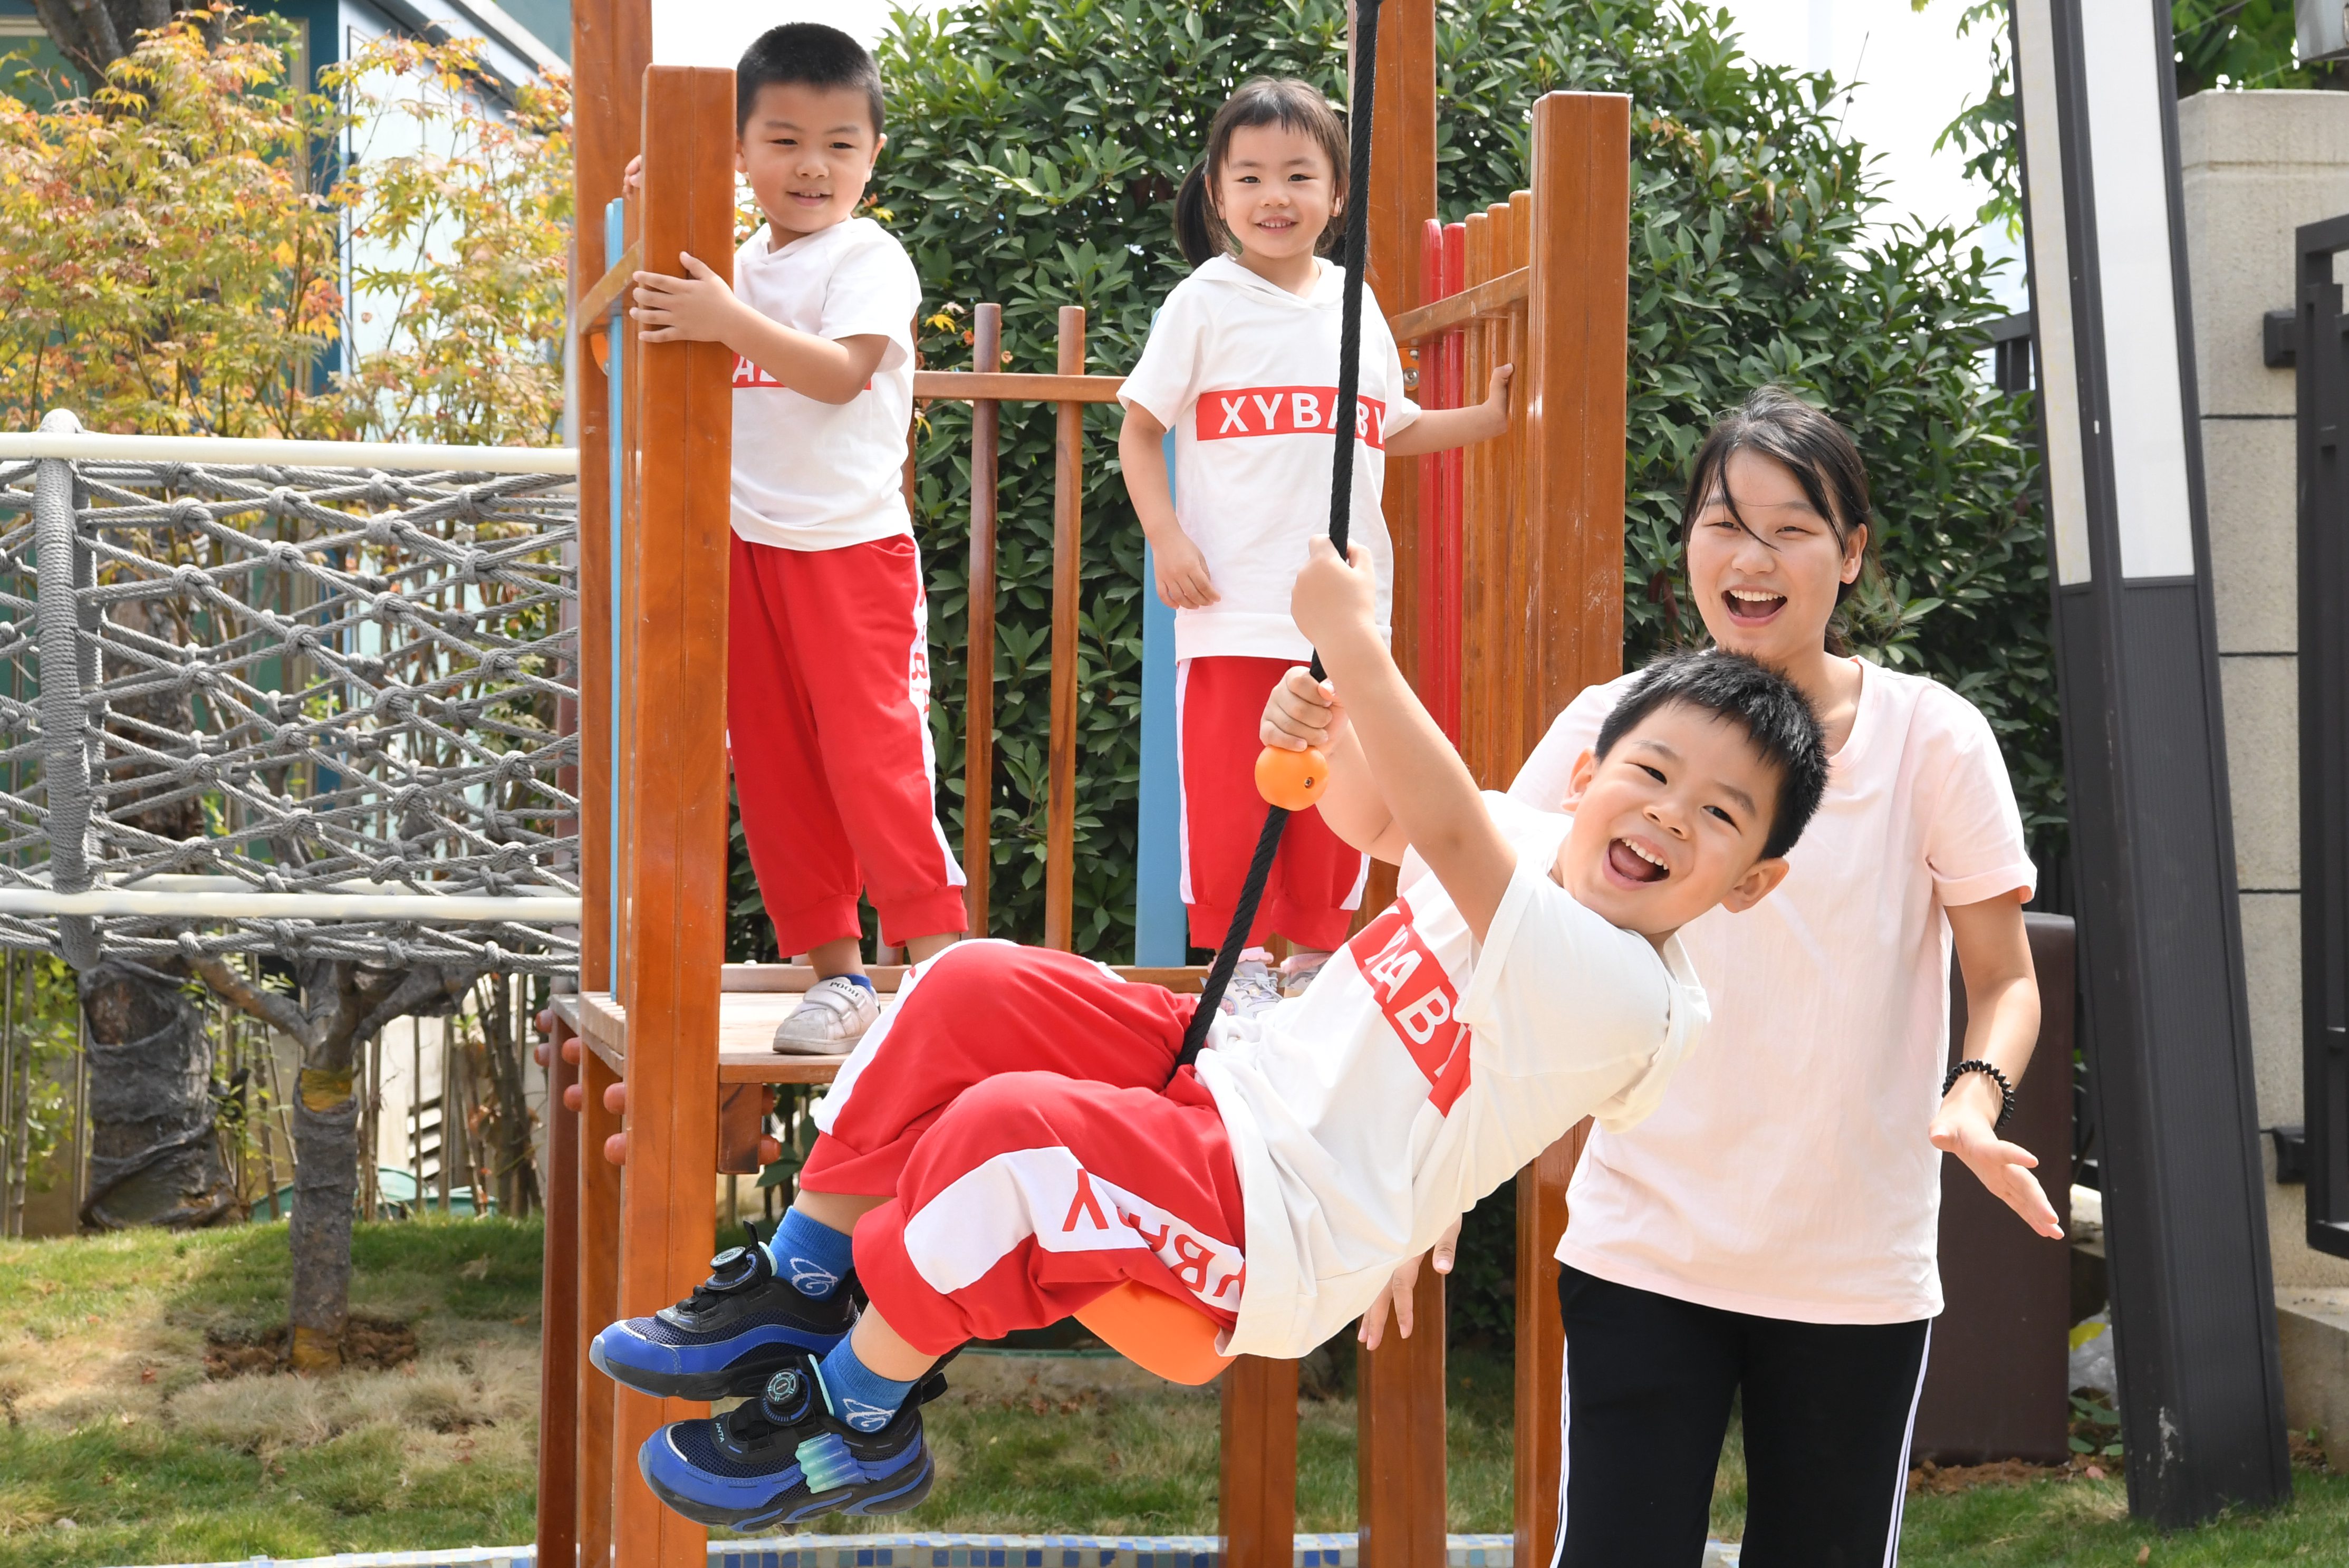 2022年9月9日，安徽省合肥市，在蜀山区仙霞幼儿园，小朋友在老师的陪伴下体验滑翔索道的乐趣，通过游戏增强孩子们的勇气和探索意识。 (2).JPG